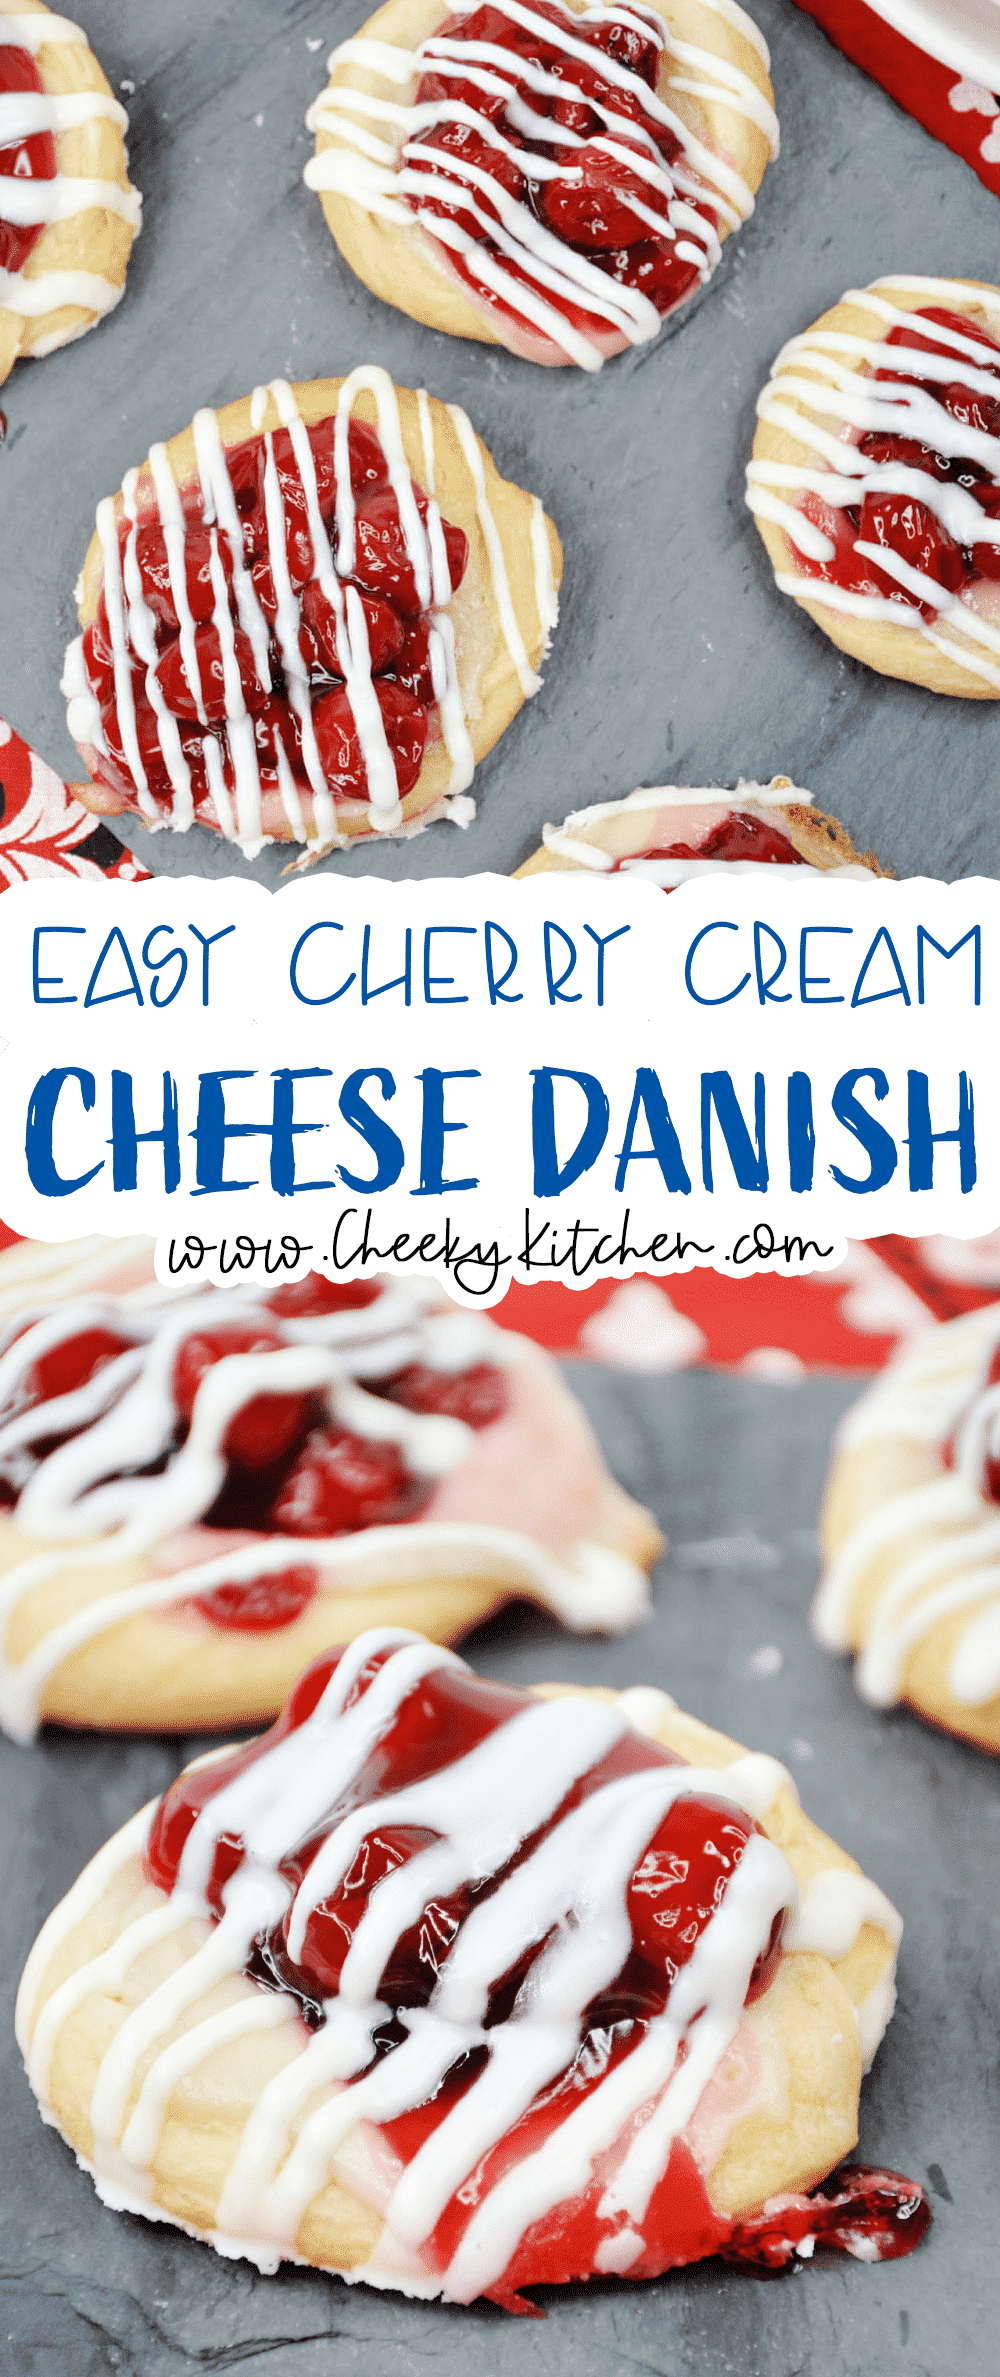 Easy Cherry Cream Cheese Danish